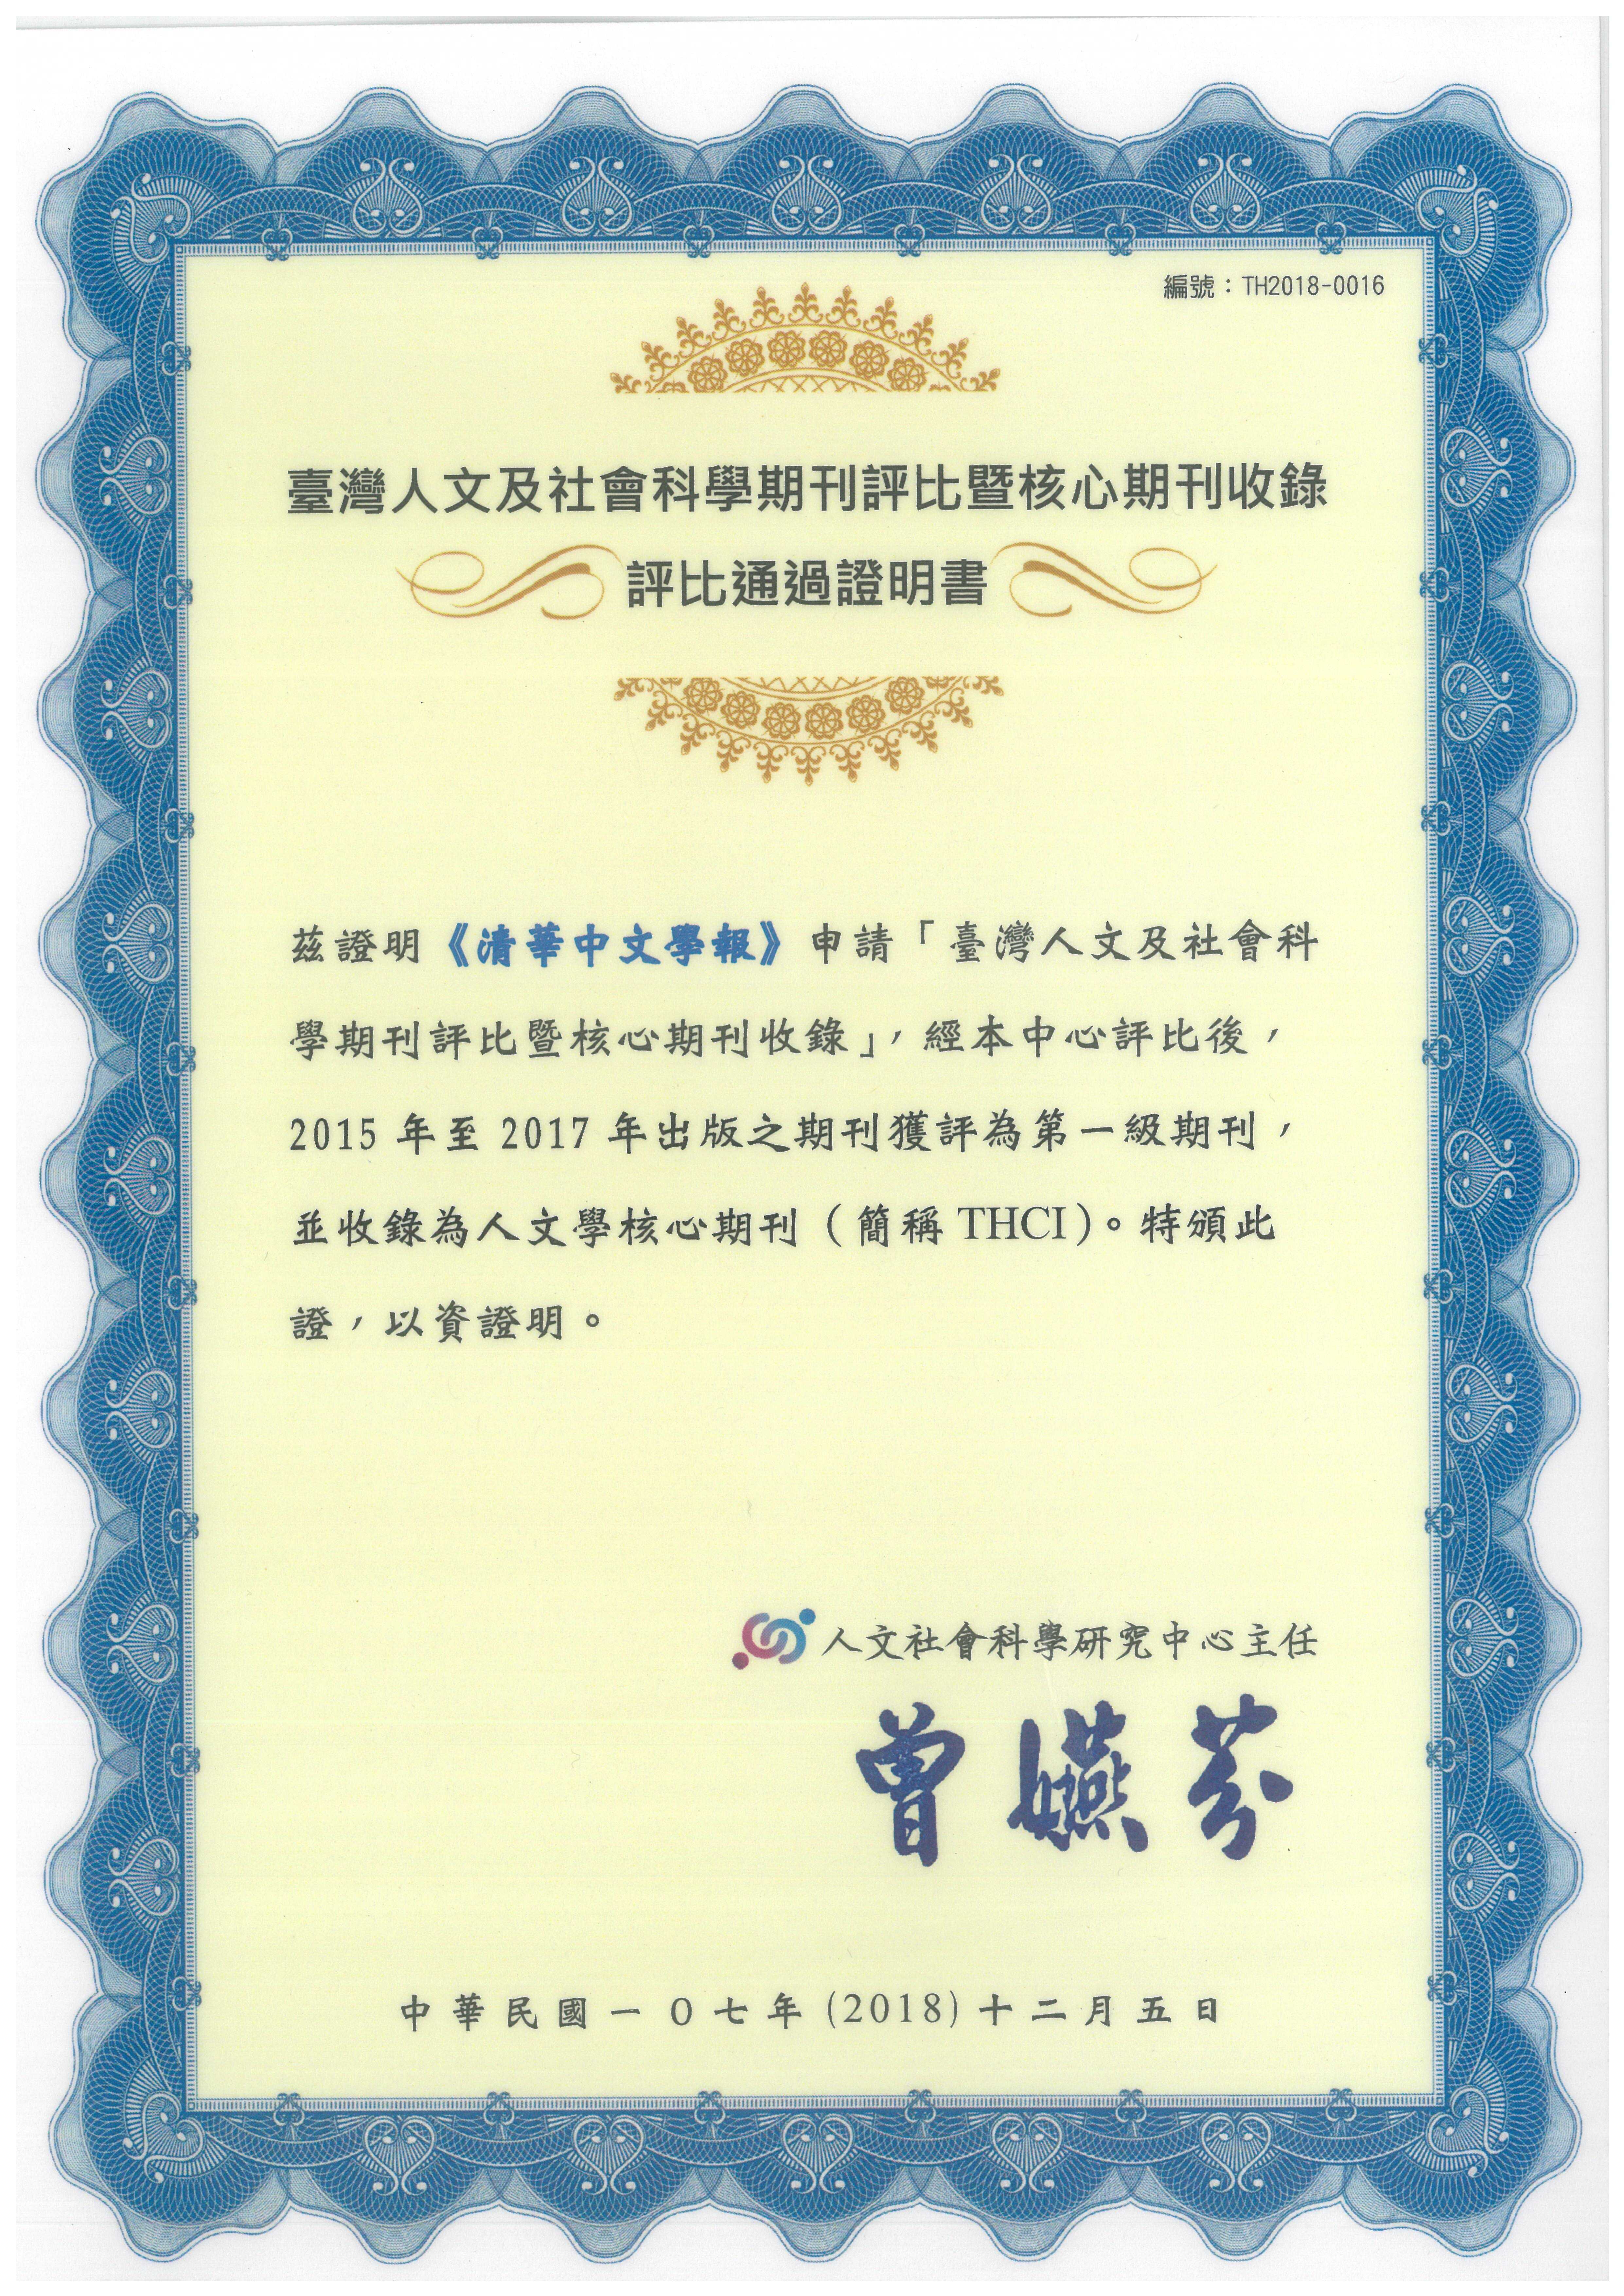 《清華中文學報》榮獲2015-2017THCI期刊證明書